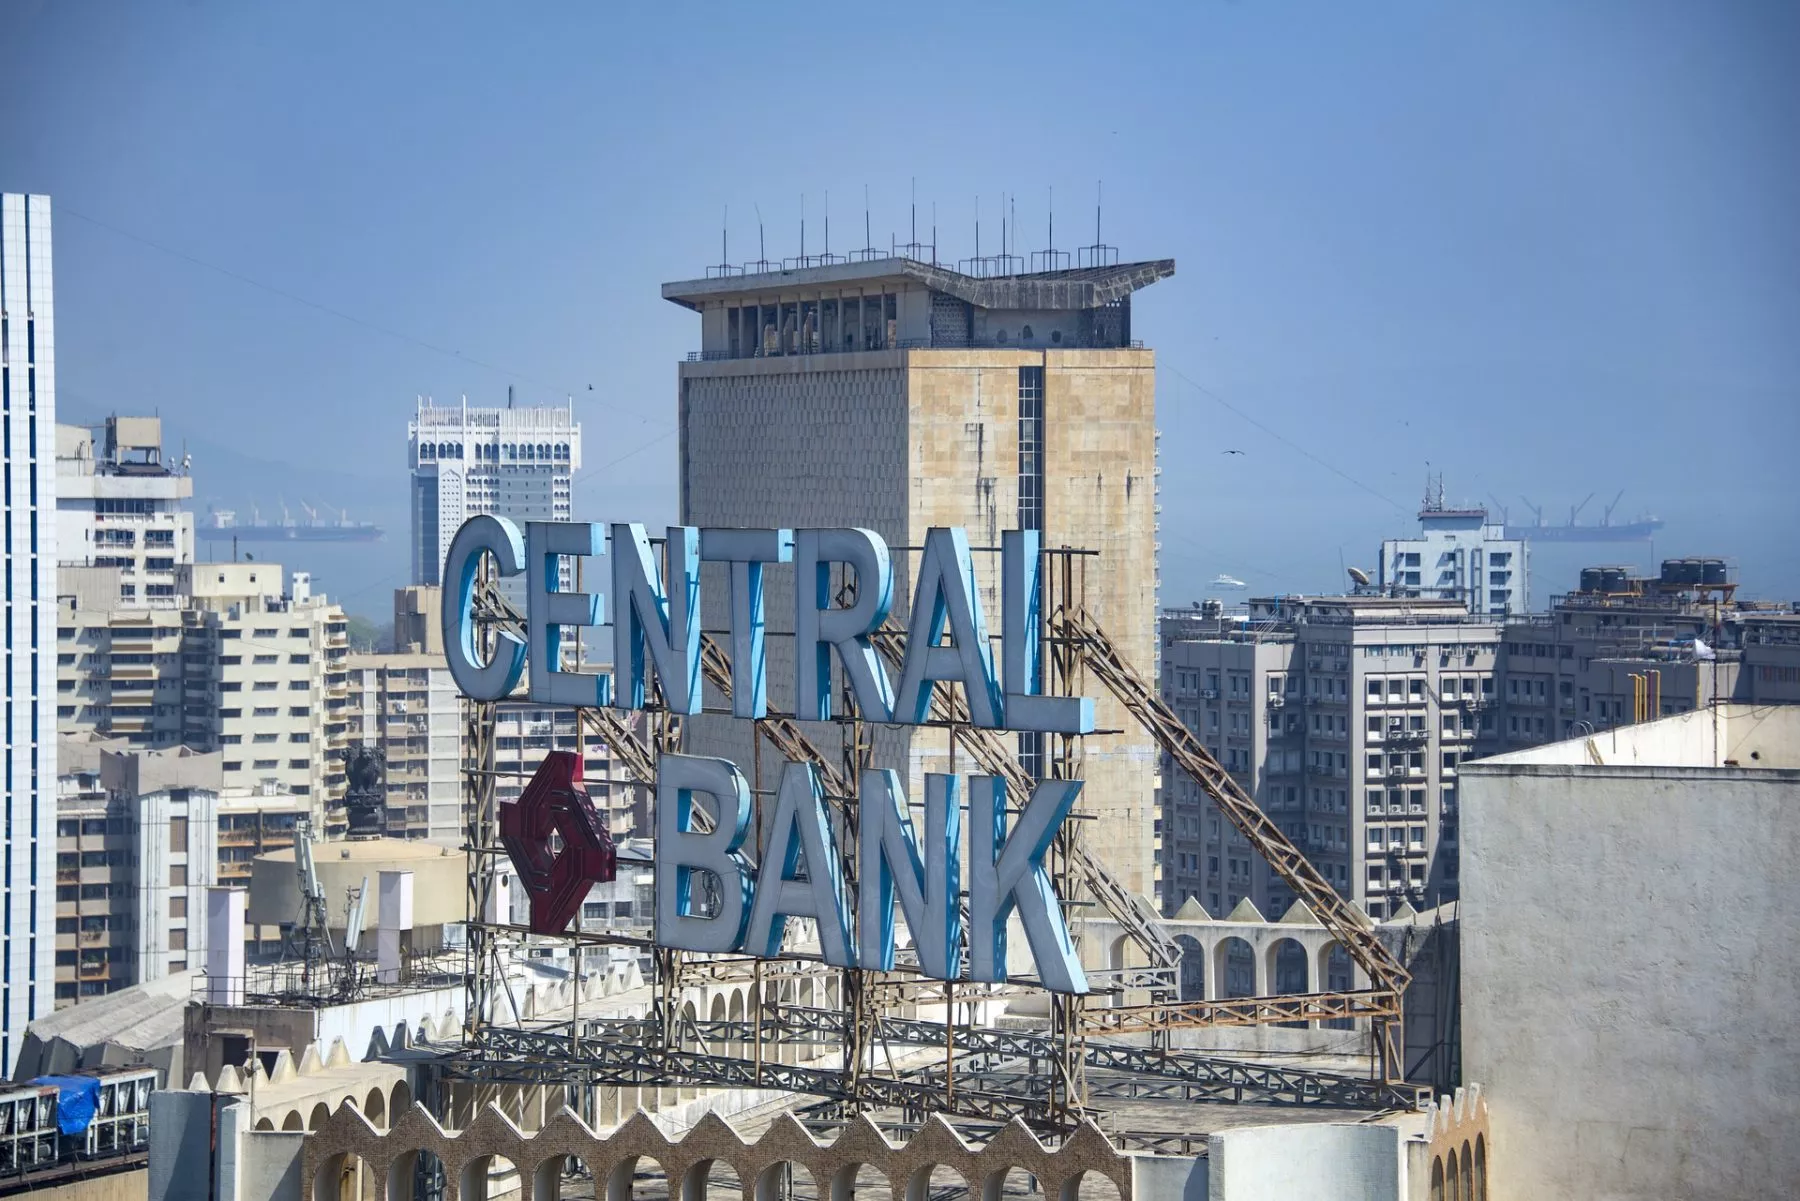 Centrale bank van India wil opheffing crypto ban aanvechten